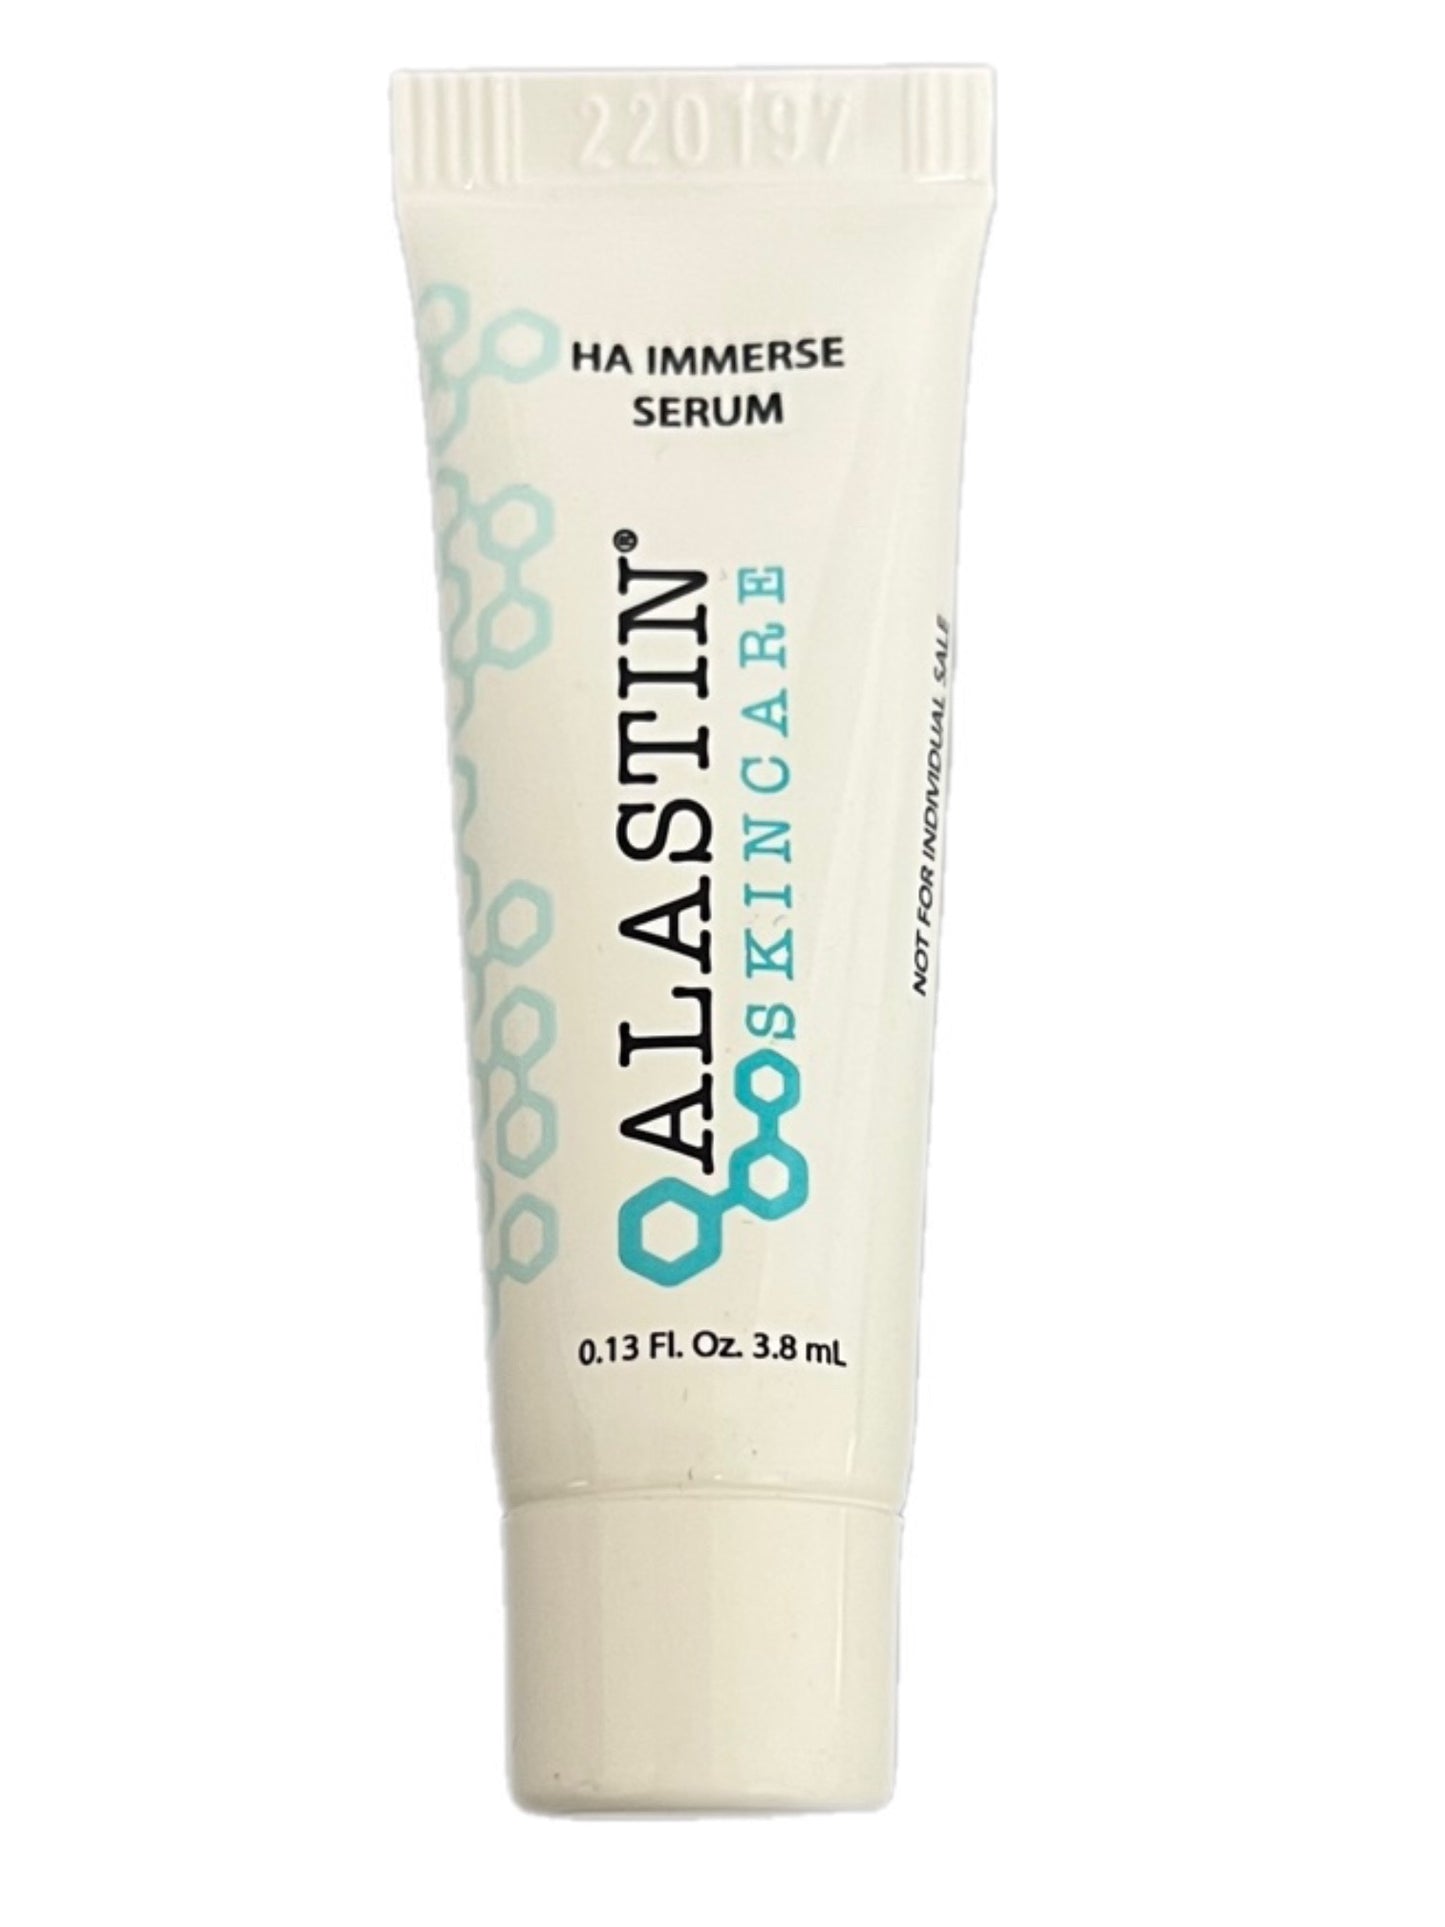 Alastin Skincare- HA Immerse Serum (SAMPLE)